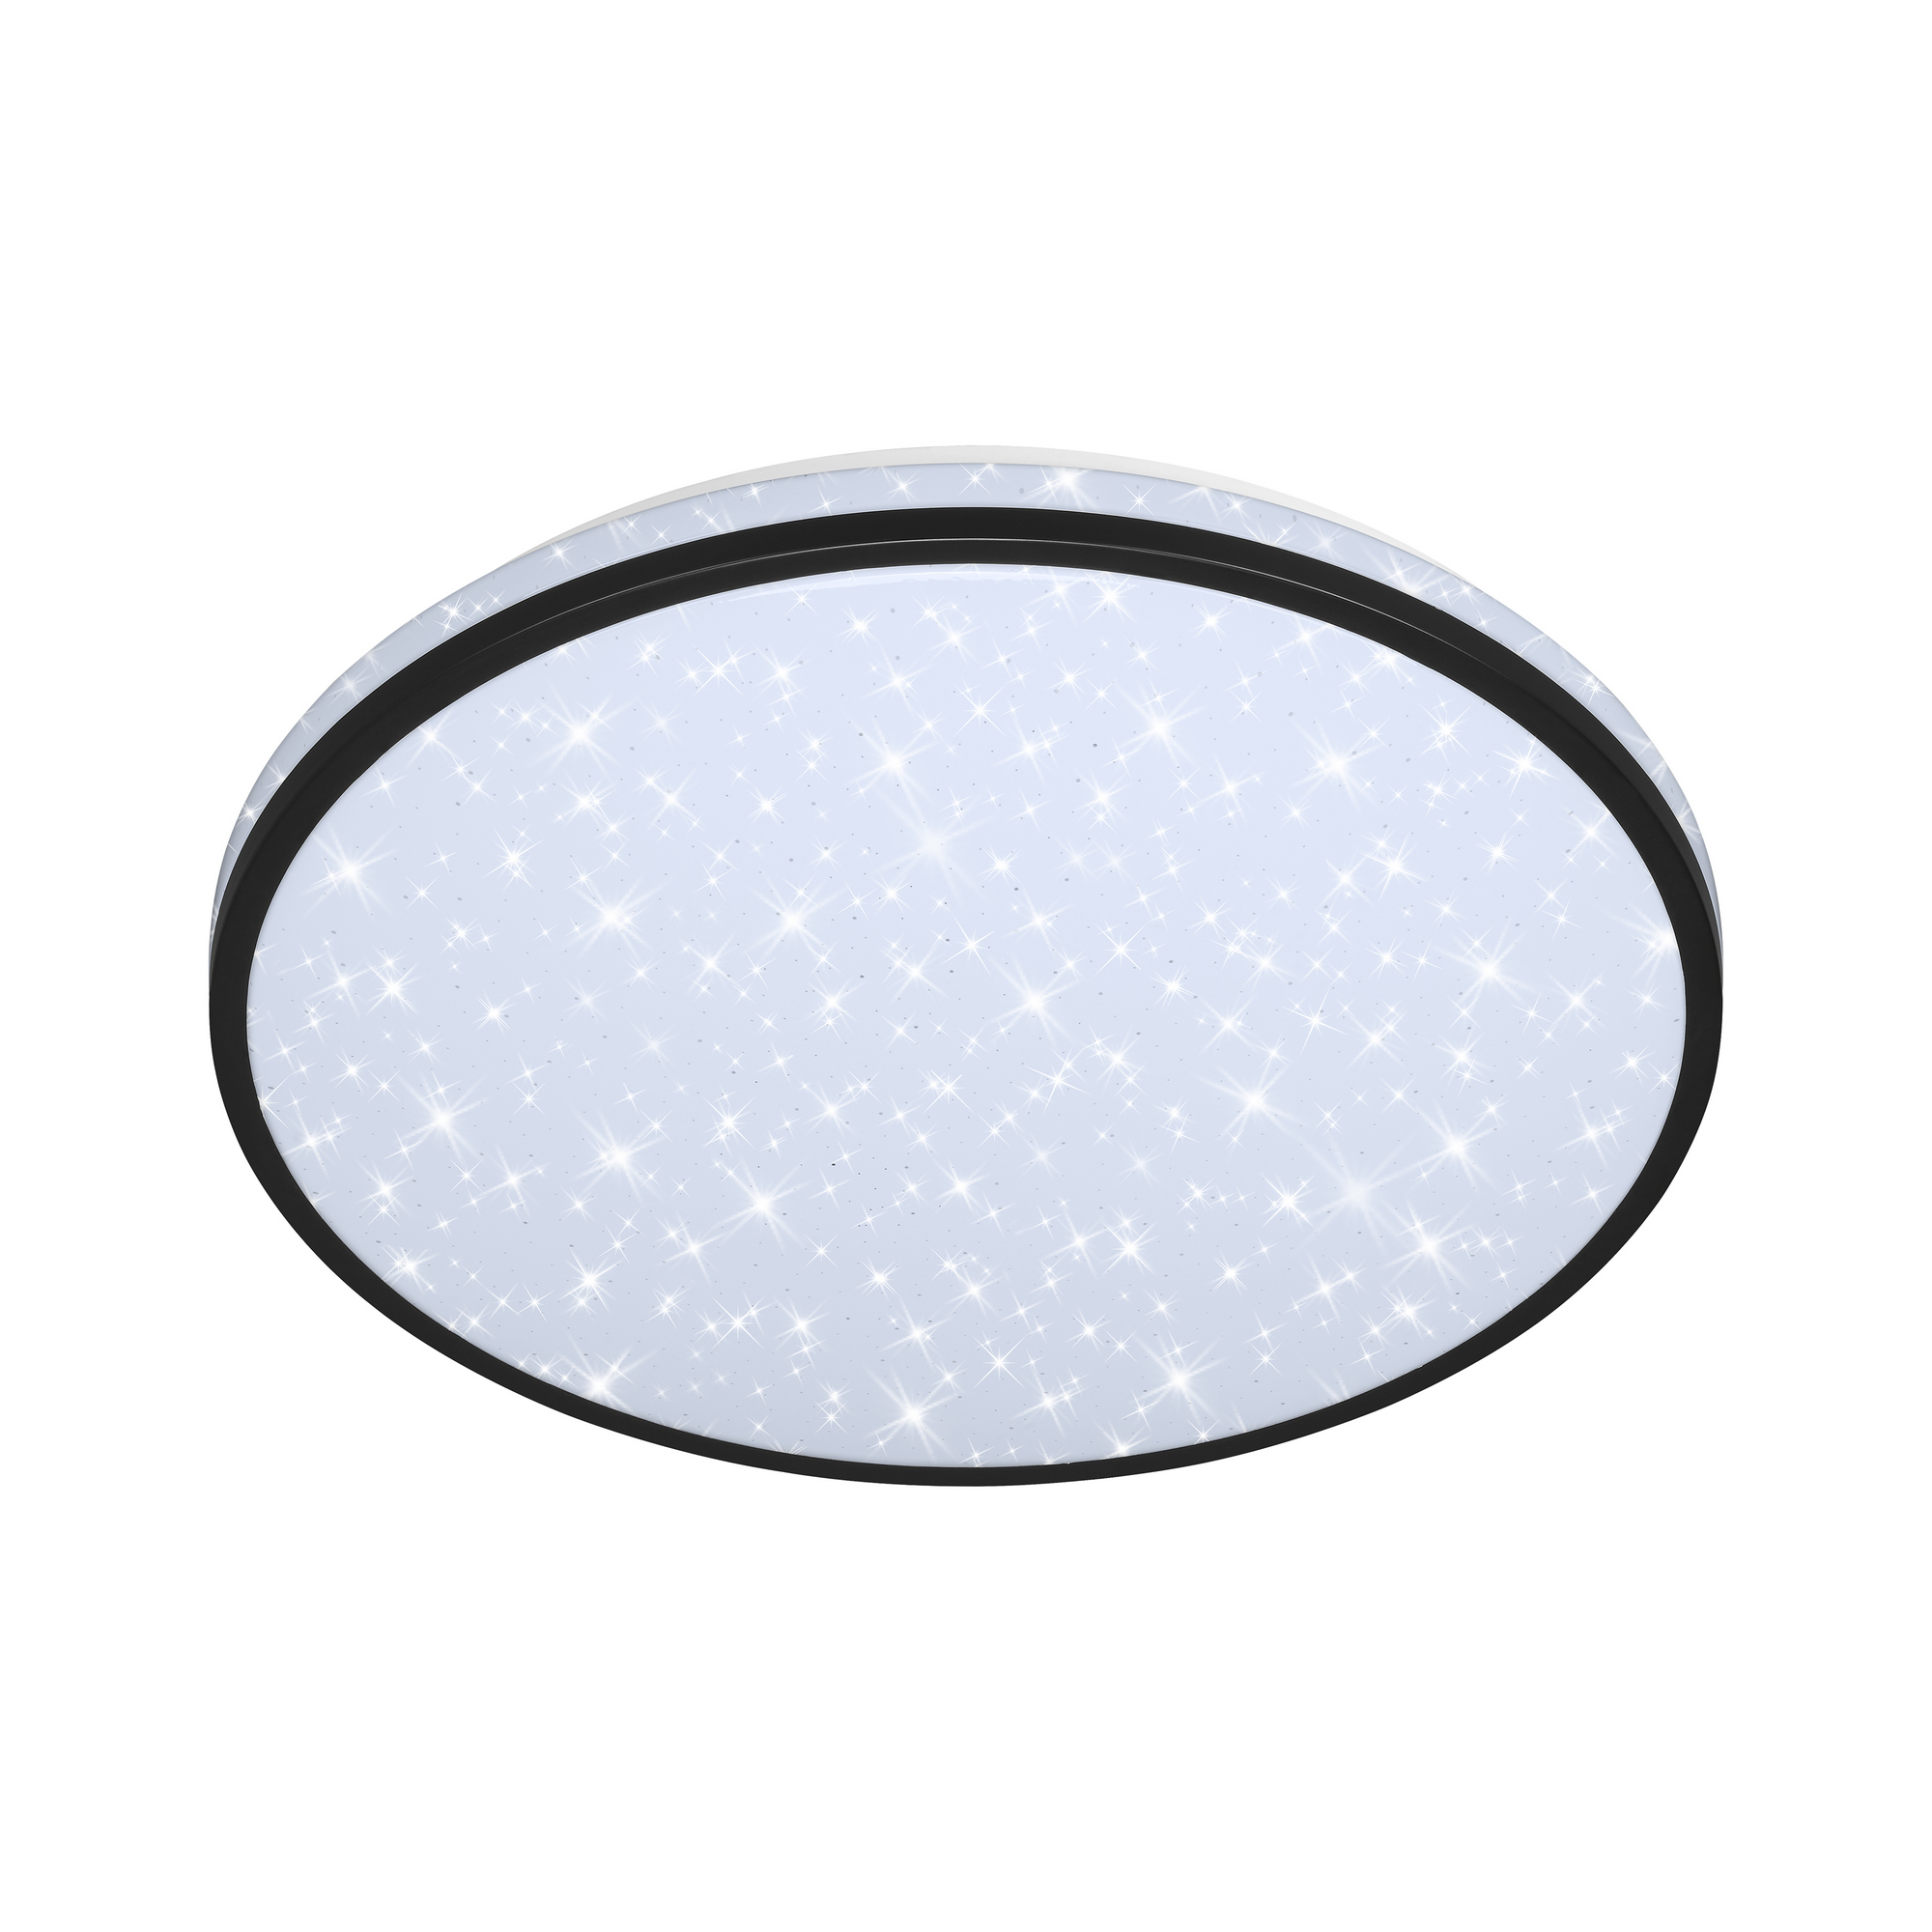 LED-Deckenleuchte 'Skizo' mit Sternendekor, schwarz, 2400 lm, Ø 38 cm + product picture